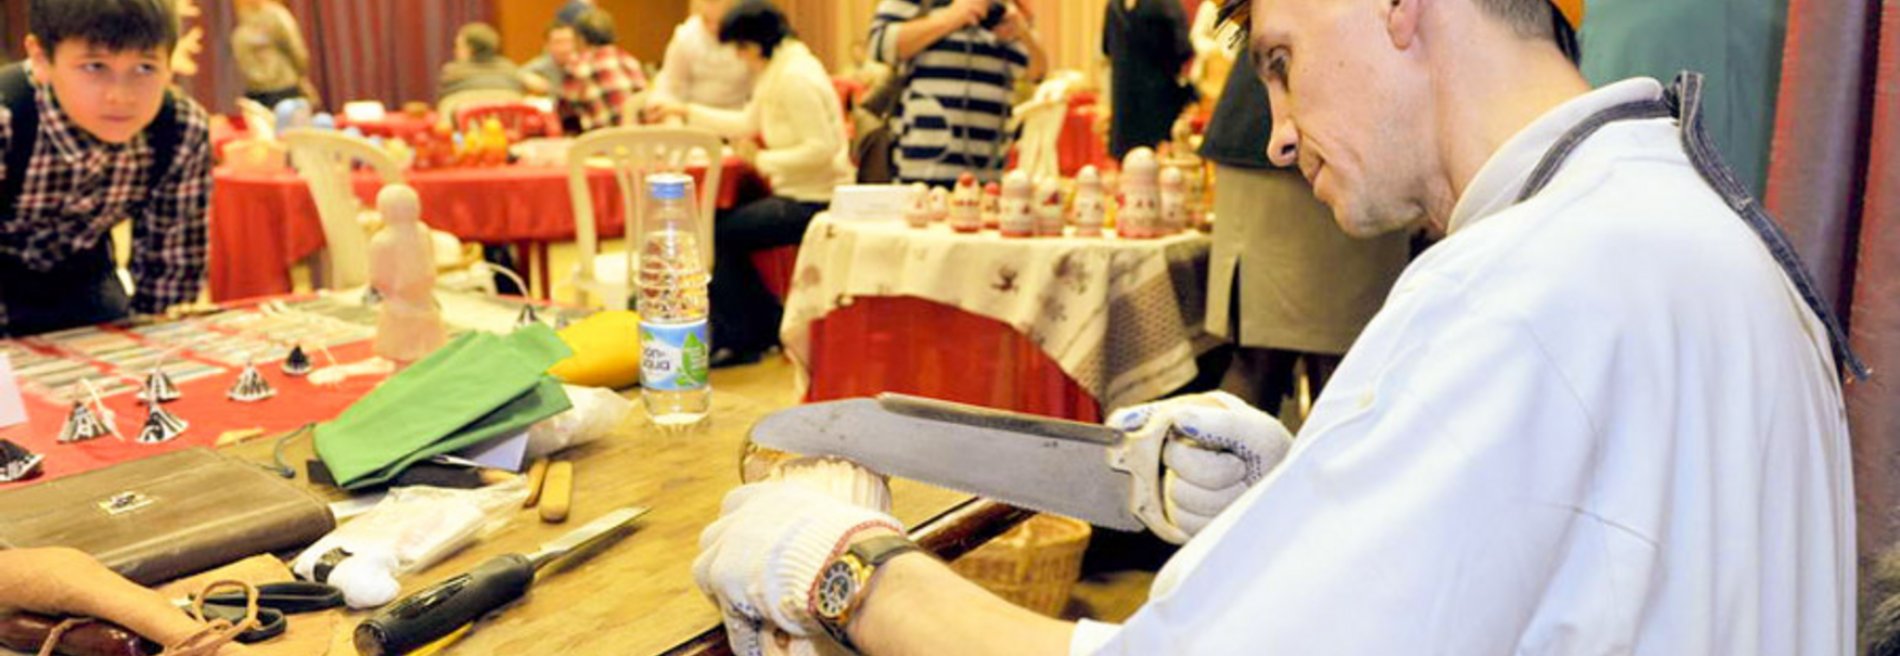 Межрегиональный праздник плотницкого искусства, посвящённый Дням почитания преподобного Трифона Печенгского